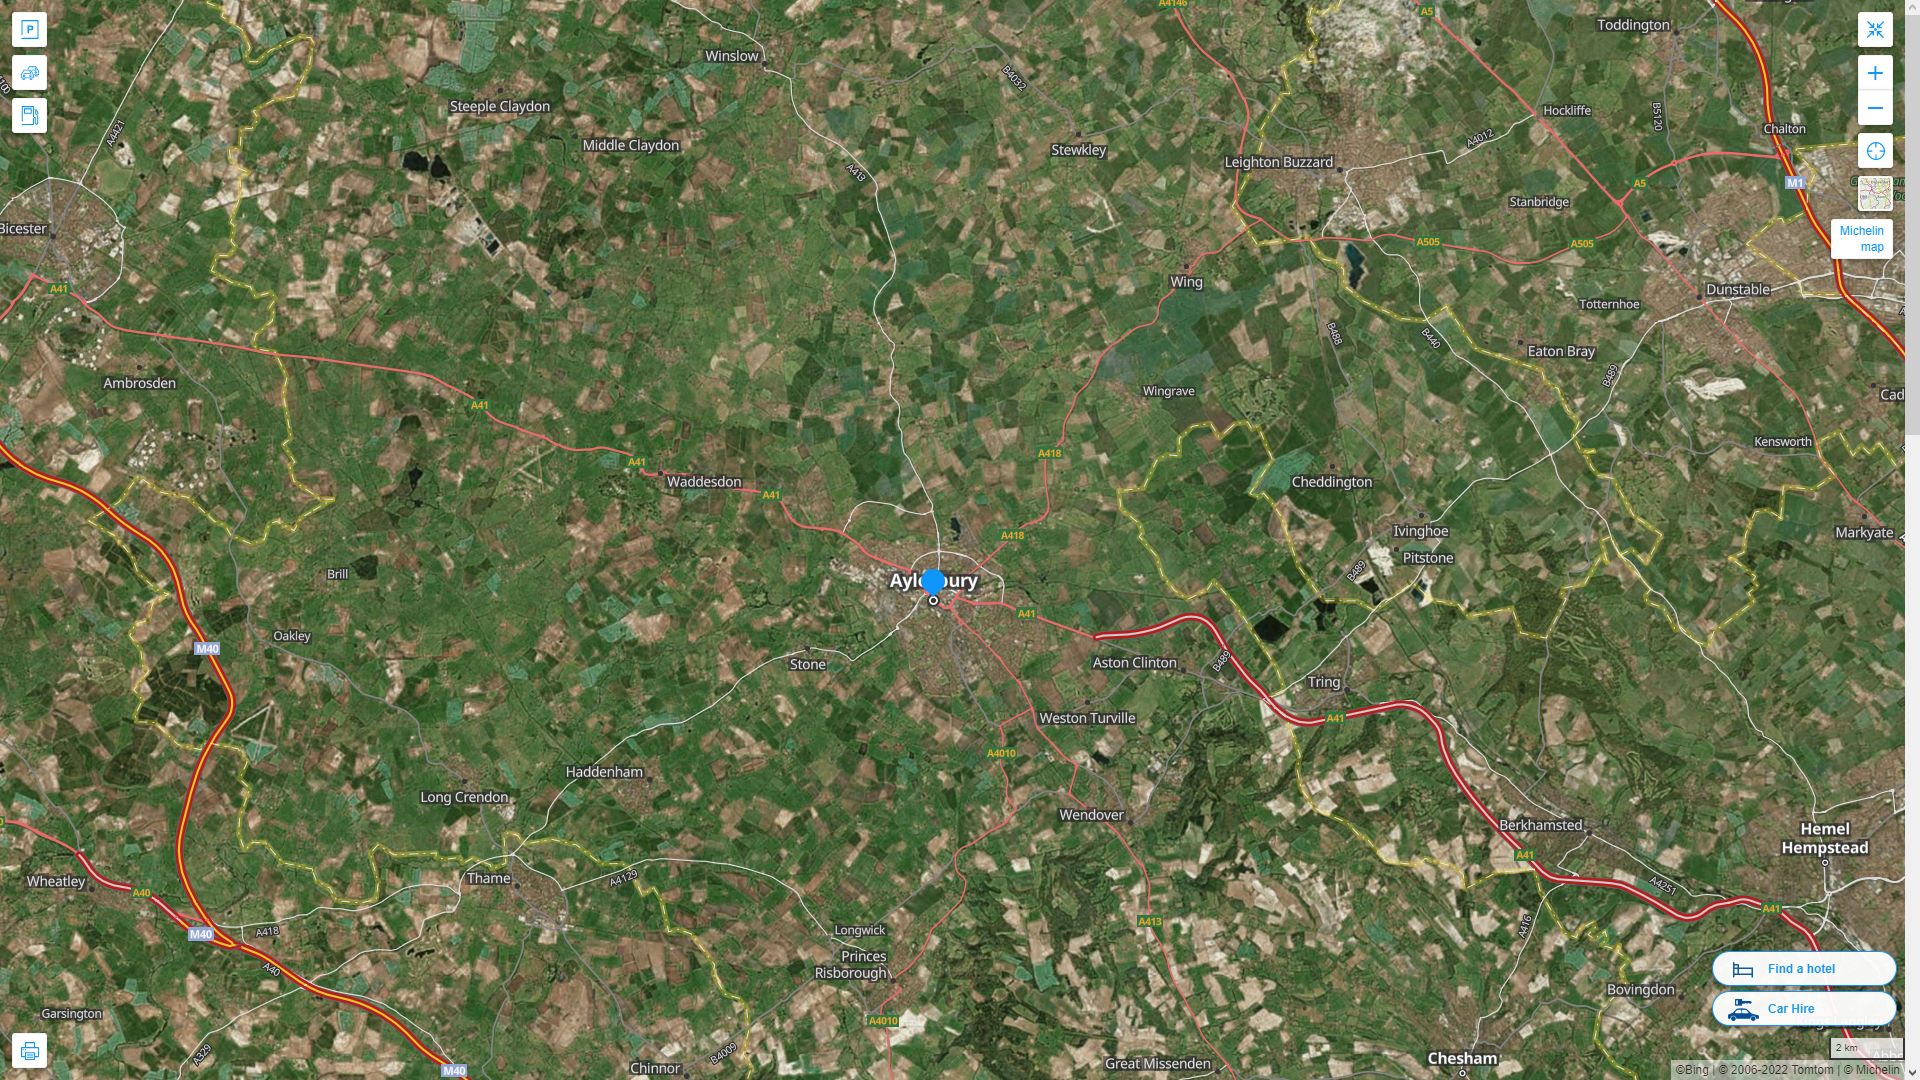 Aylesbury Royaume Uni Autoroute et carte routiere avec vue satellite